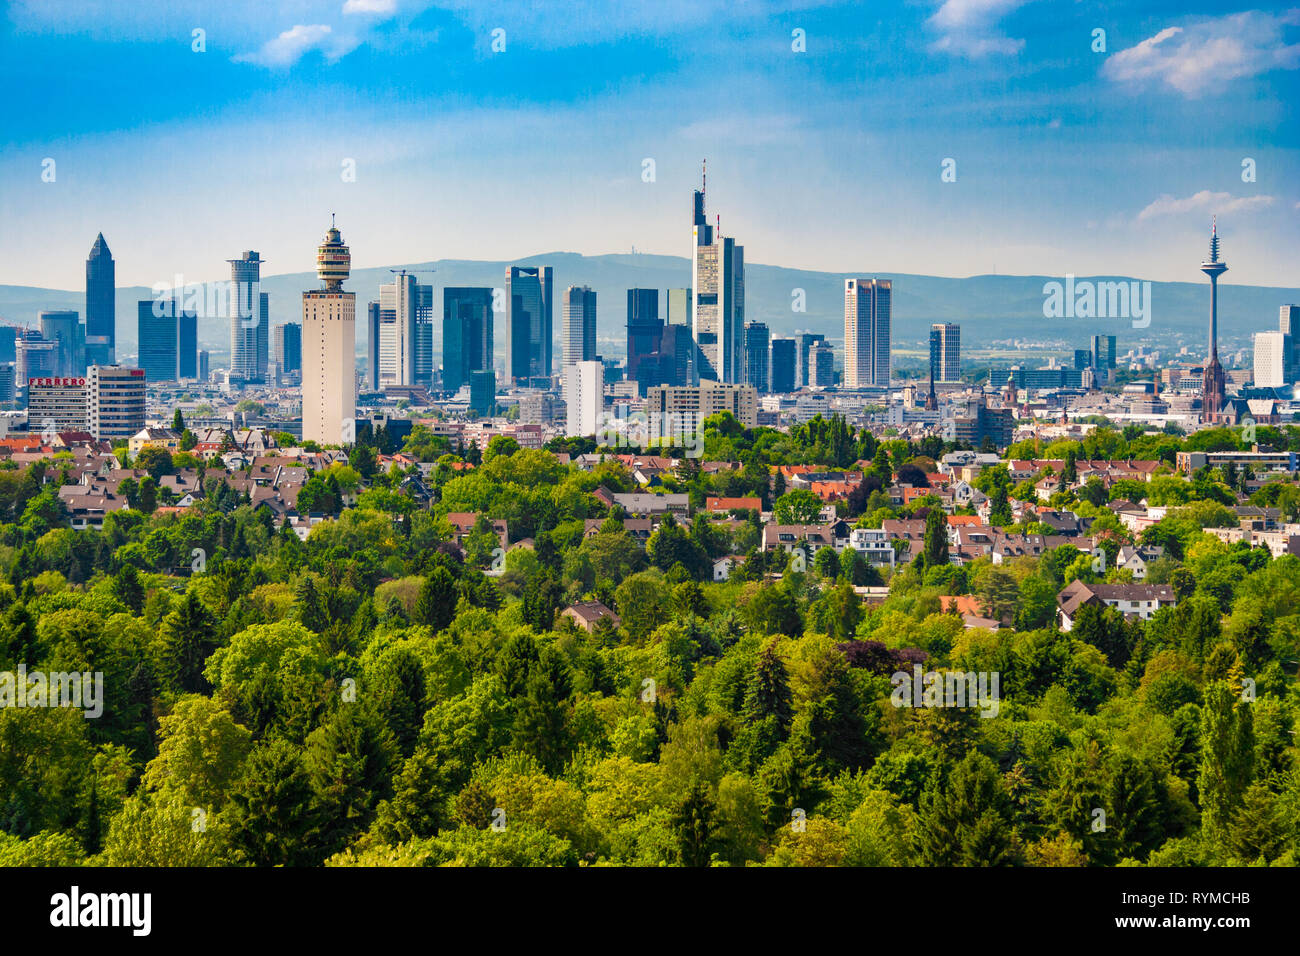 Die berühmte Skyline von Frankfurt, Deutschland an einem schönen sonnigen Tag mit einem blauen Himmel. Die Aussicht nach Norden in Richtung Frankfurter Wolkenkratzer zeigt alle... Stockfoto